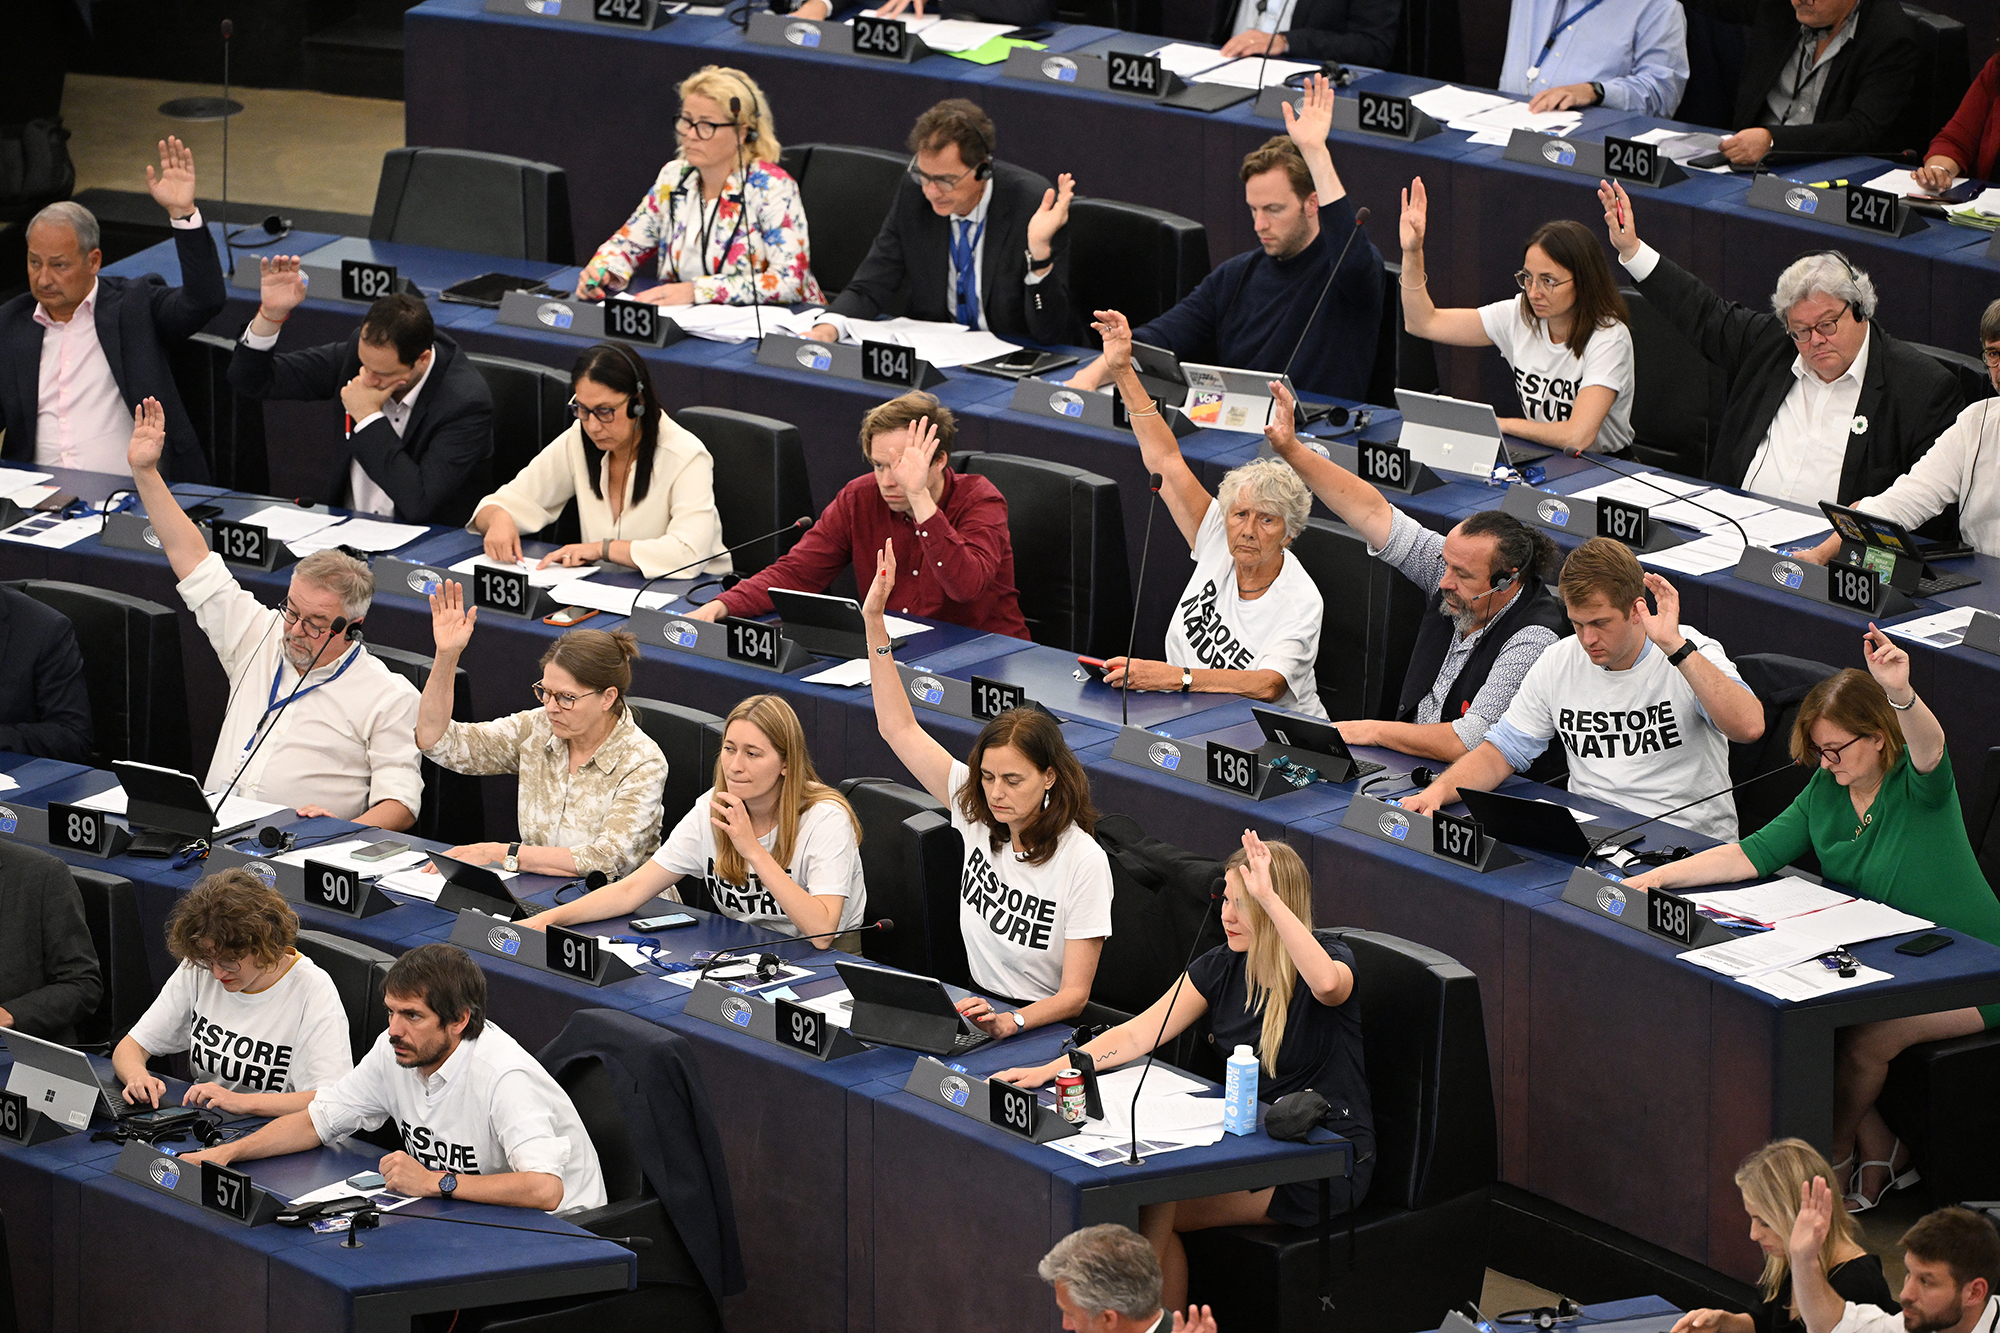 Einige EU-Parlamentarier haben T-Shirts mit der Aufschrift "Restore Nature" getragen (Bild: Frederick Florin/AFP)